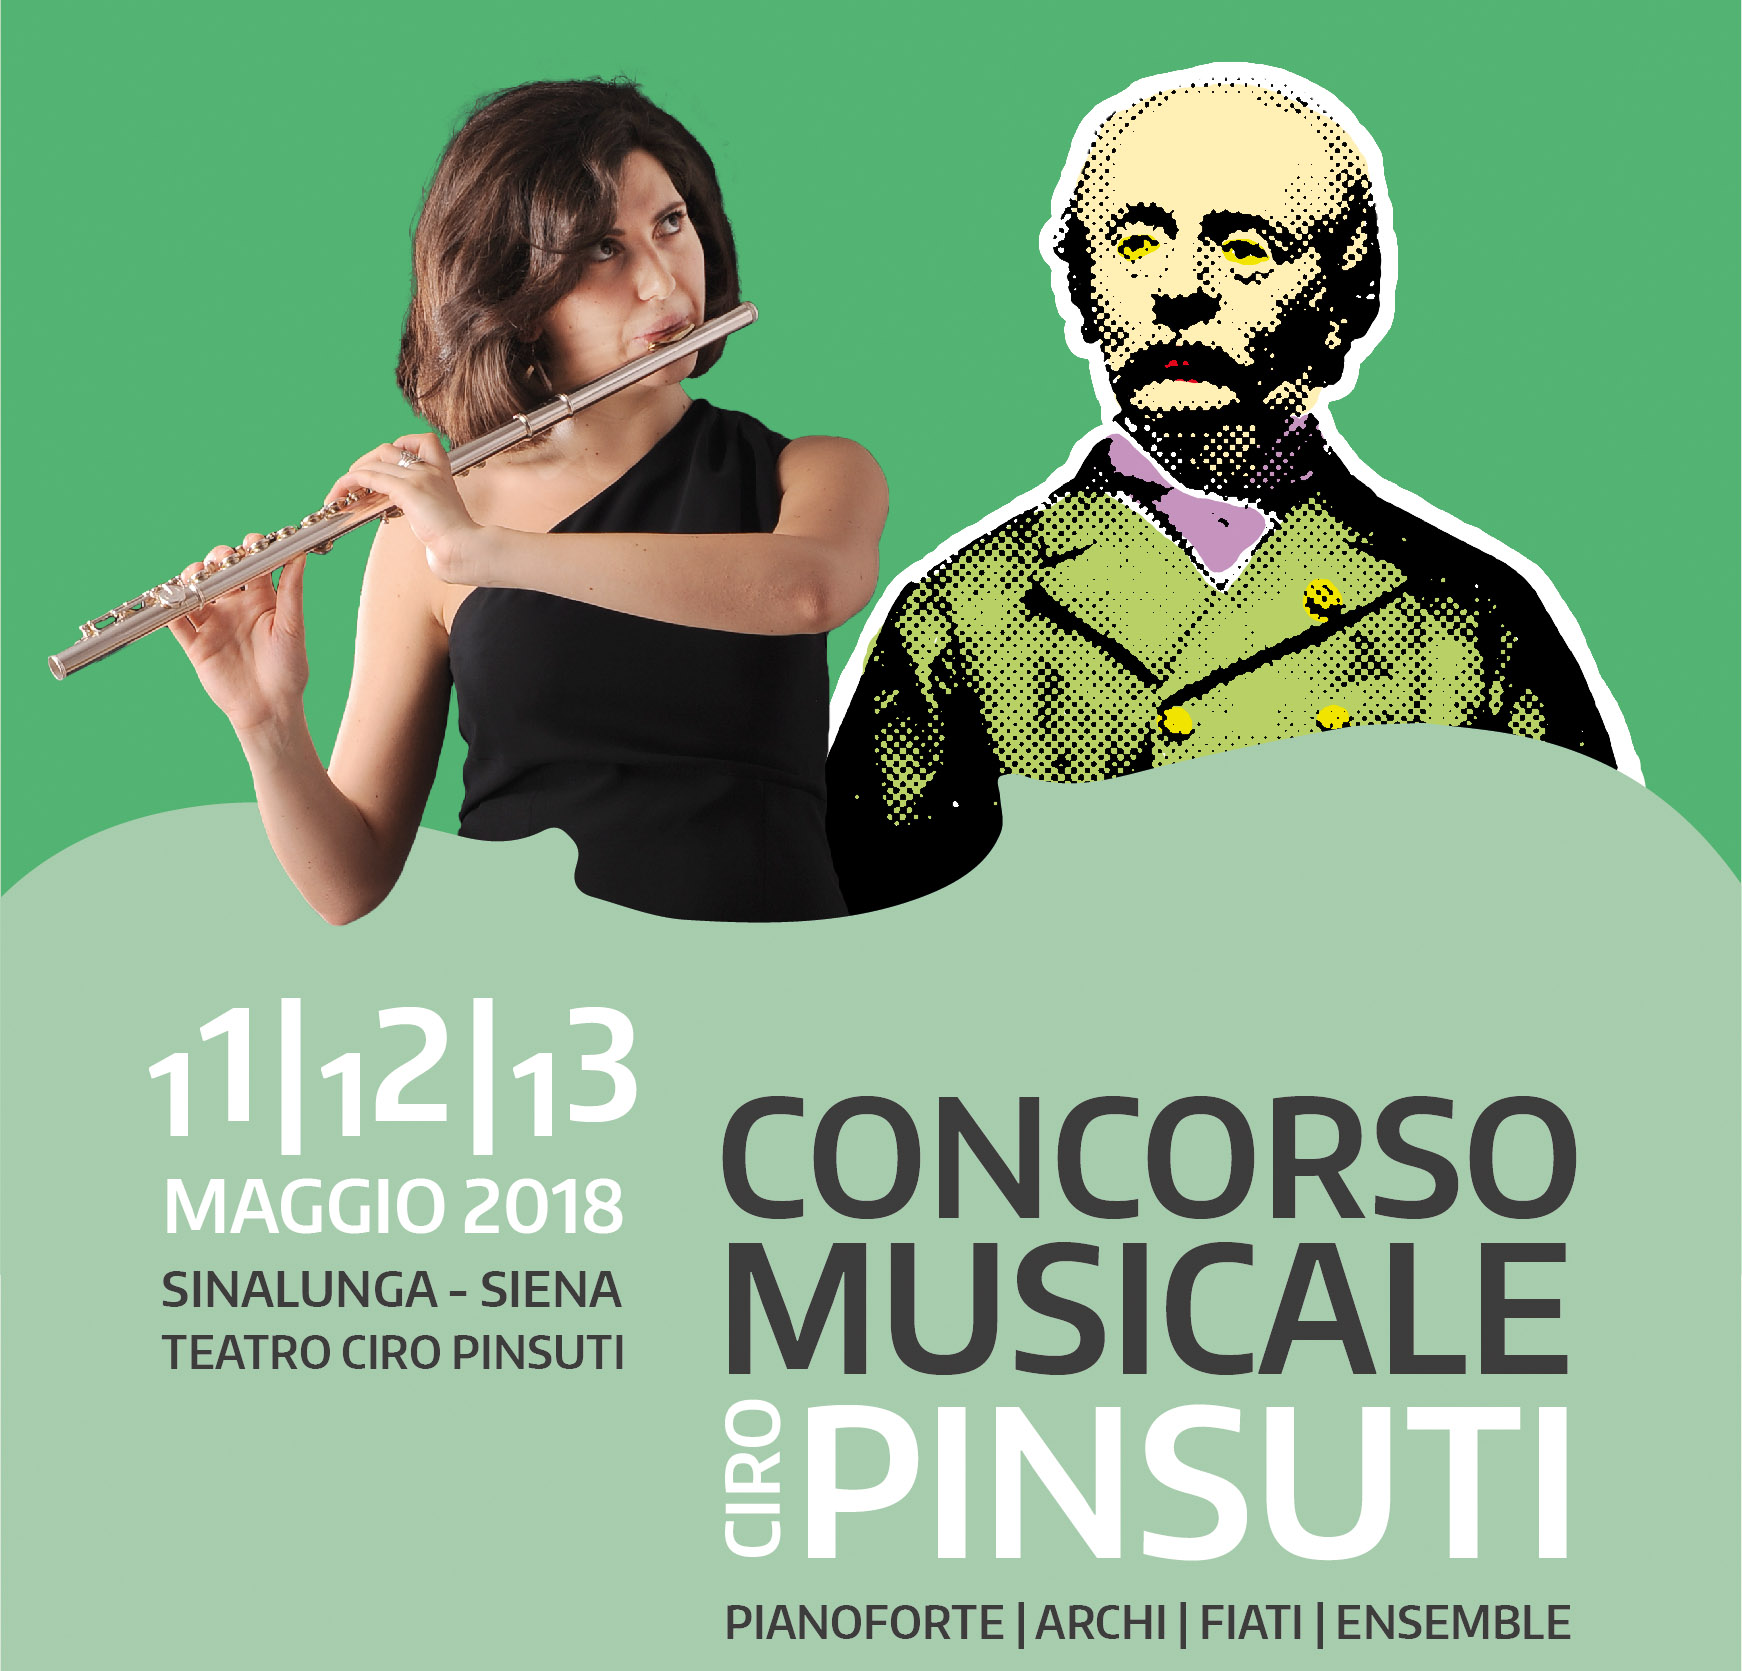 CONCORSO MUSICALE CIRO PINSUTI: GRADUATORIE E CONVOCAZIONI PER DOMENICA 13 MAGGIO